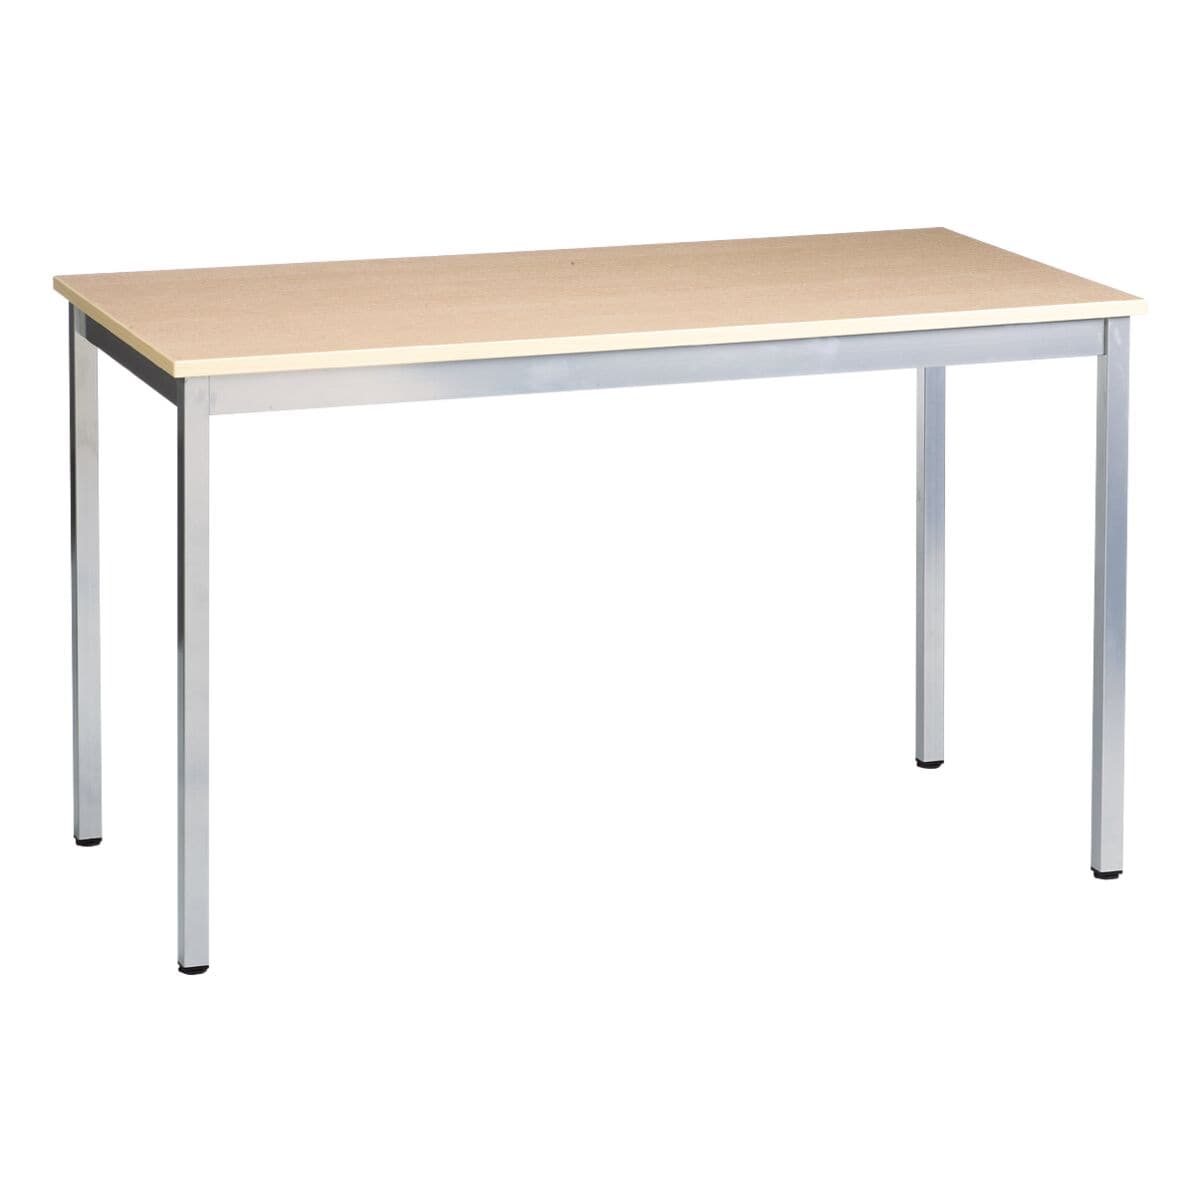 SODEMATUB bureau Programme table universel 140 cm, 4 pieds couleur aluminium